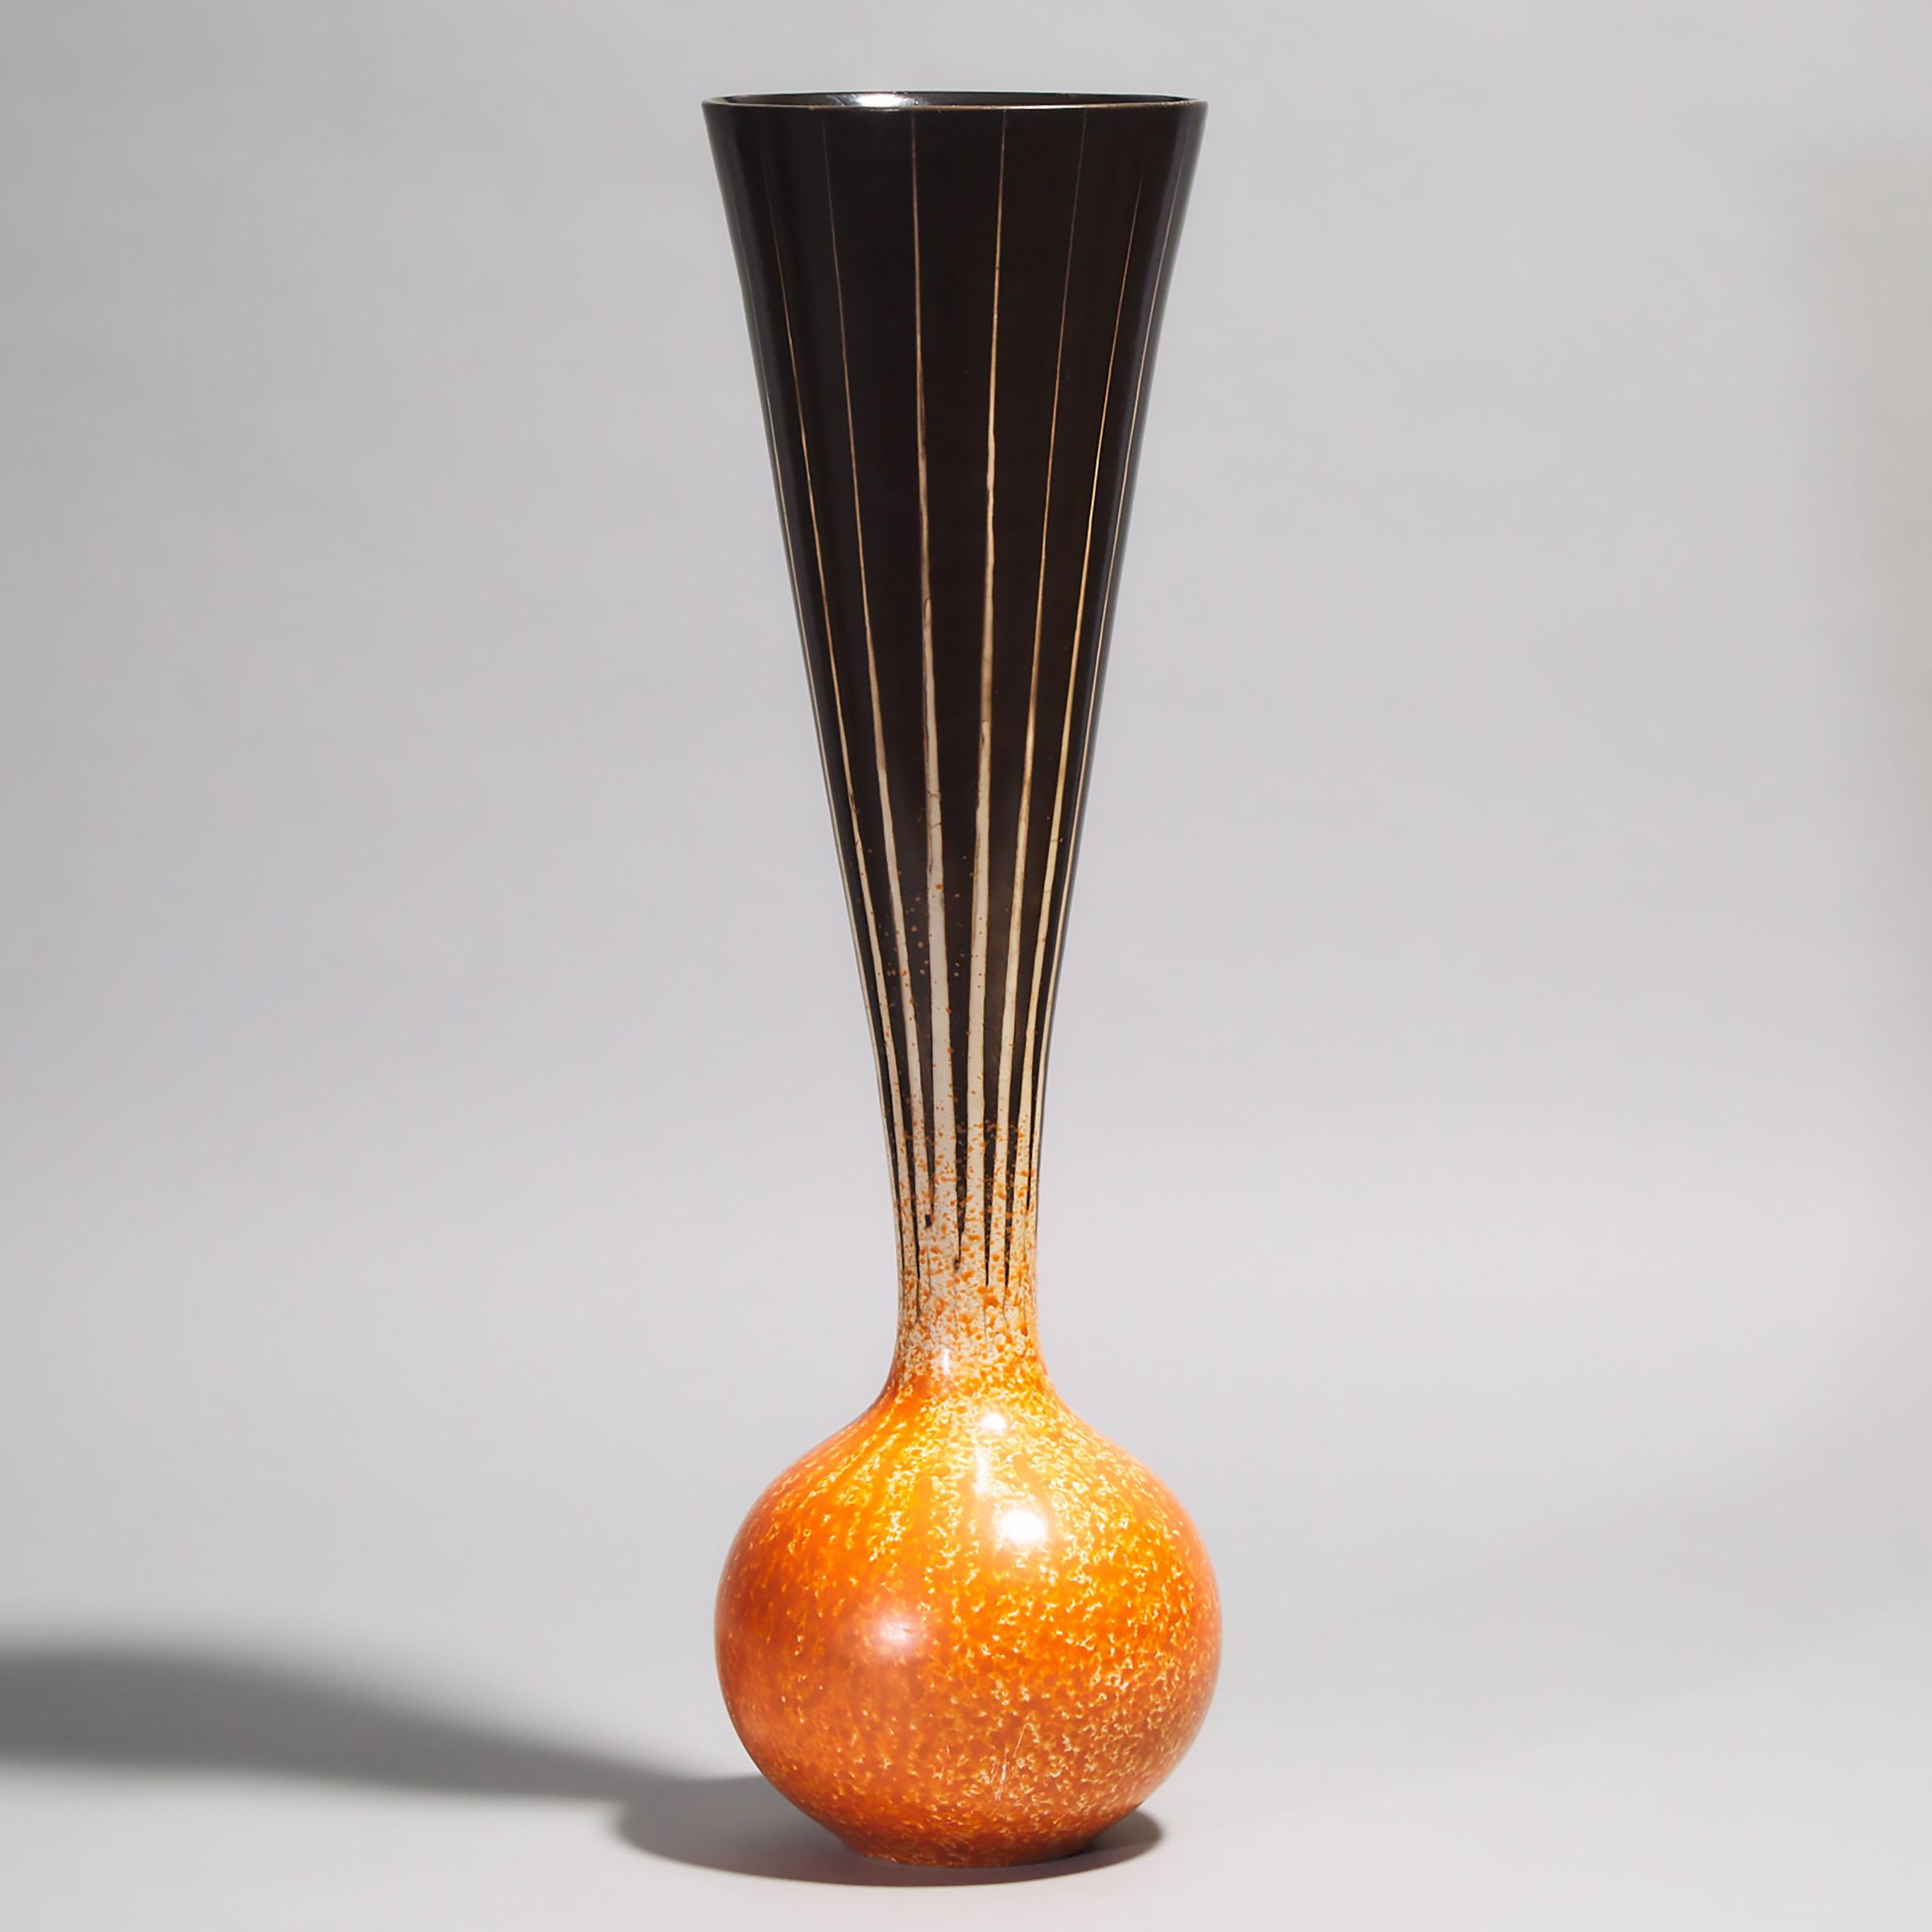 John Nuttgens (British, b.1948), Terra Sigillata 'Solar Flare' Vase, c.1999